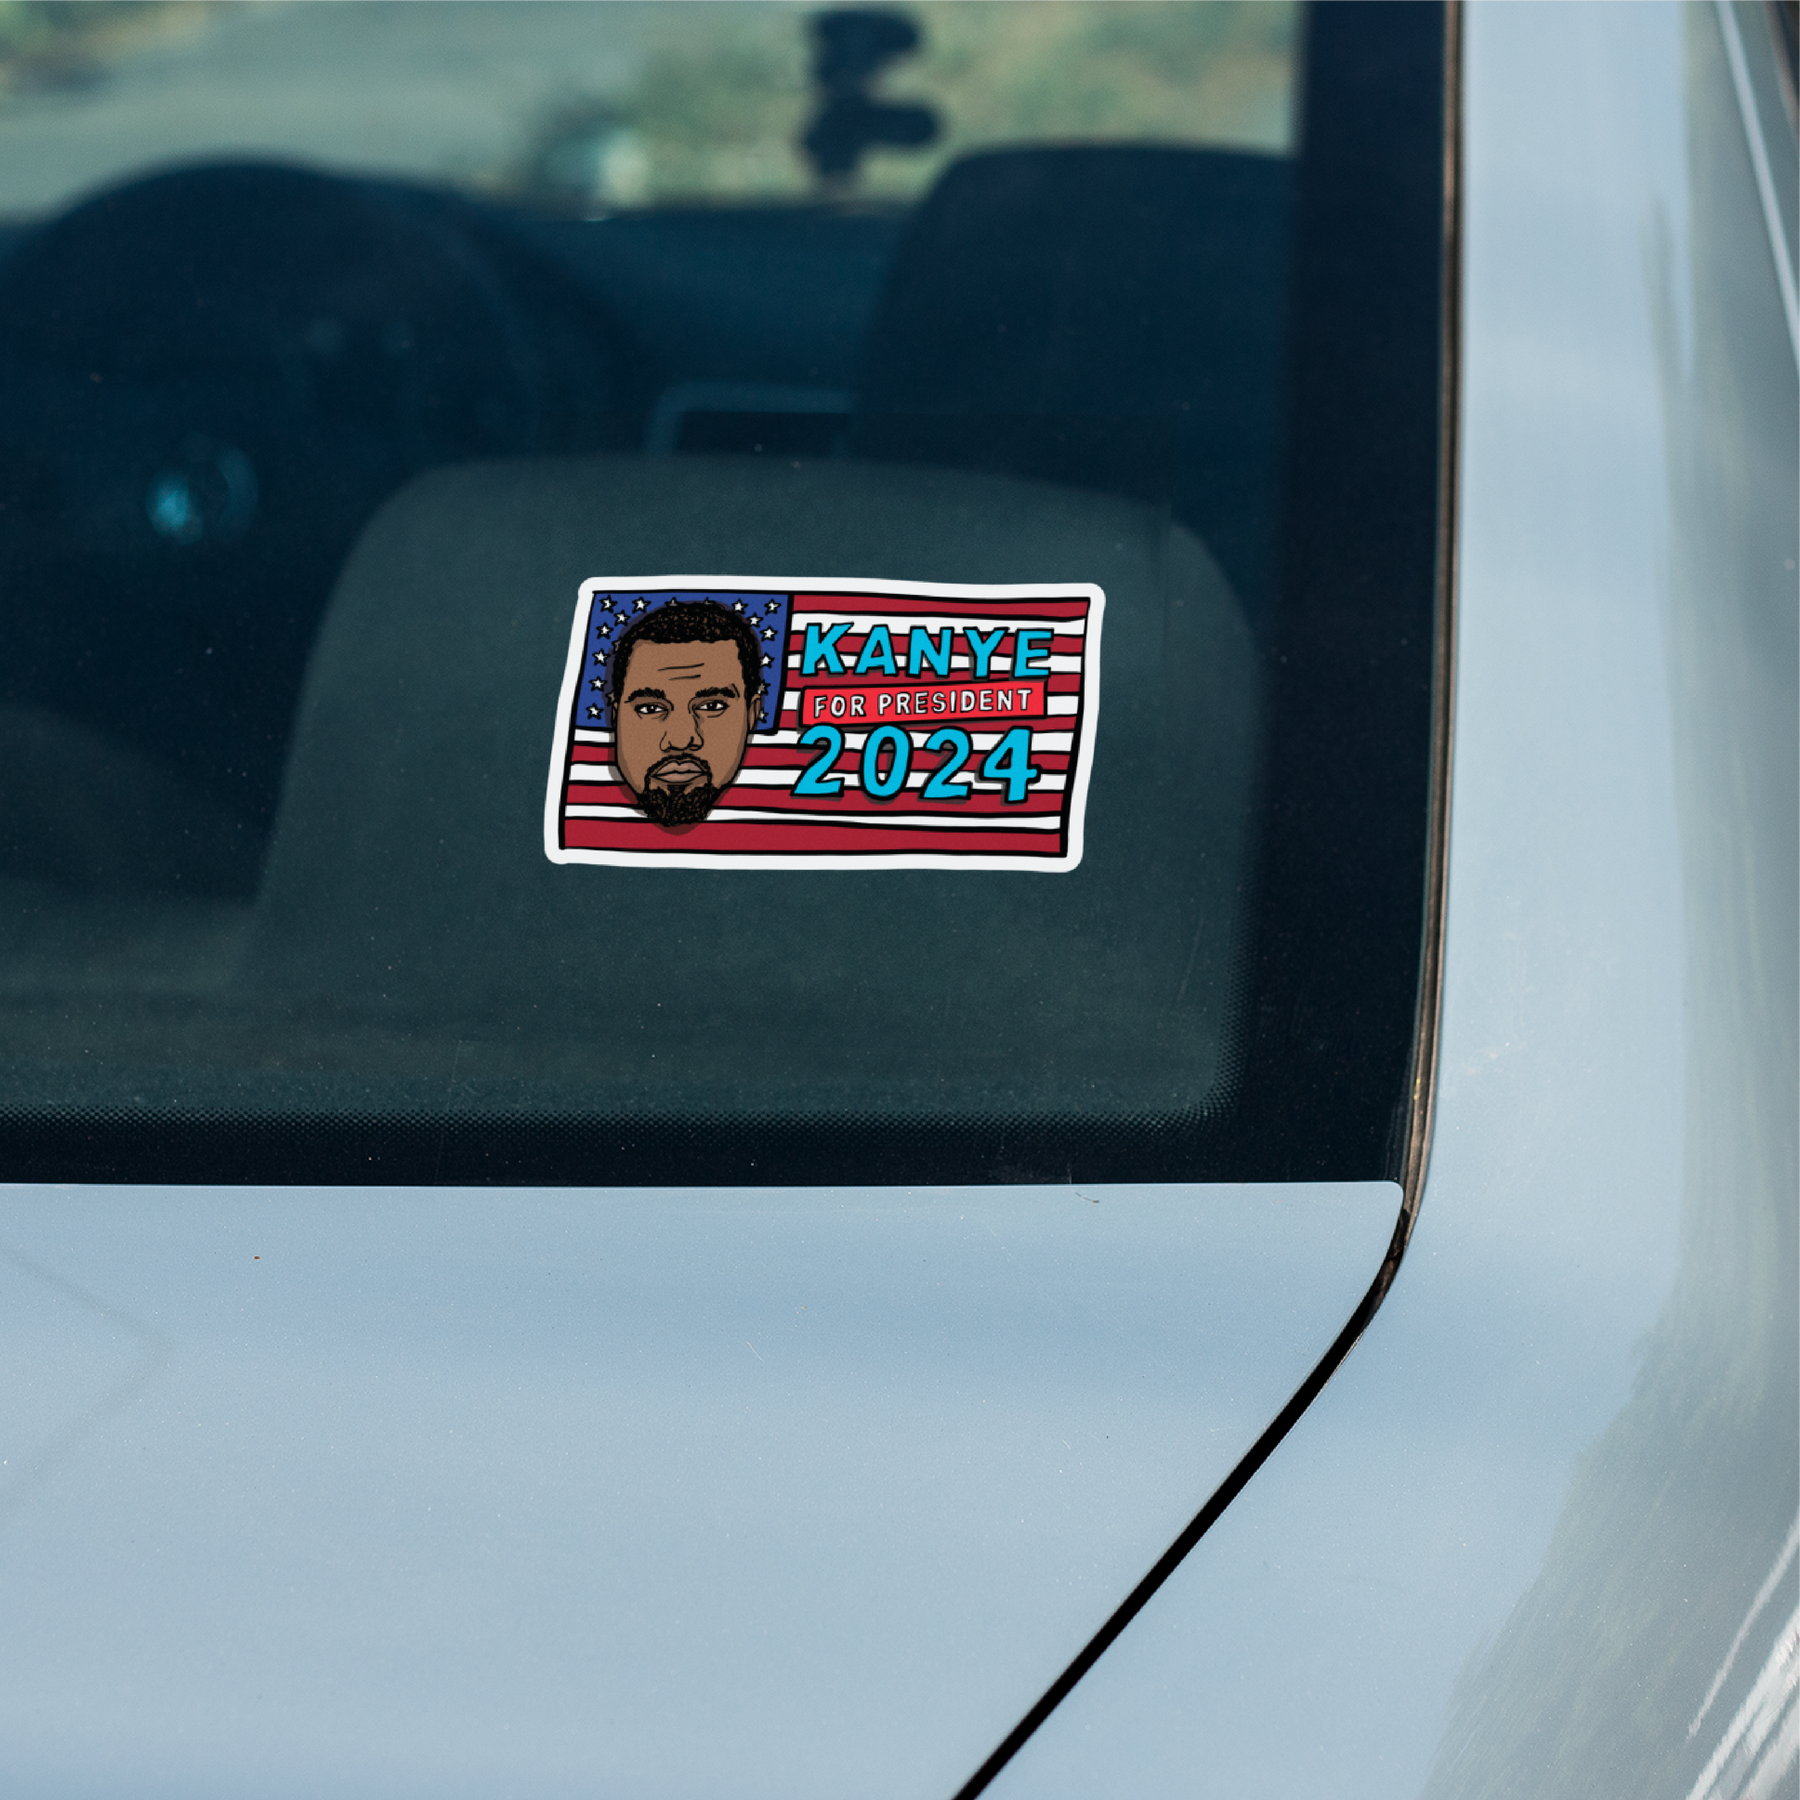 Kanye For President 2024 🗽 - Sticker